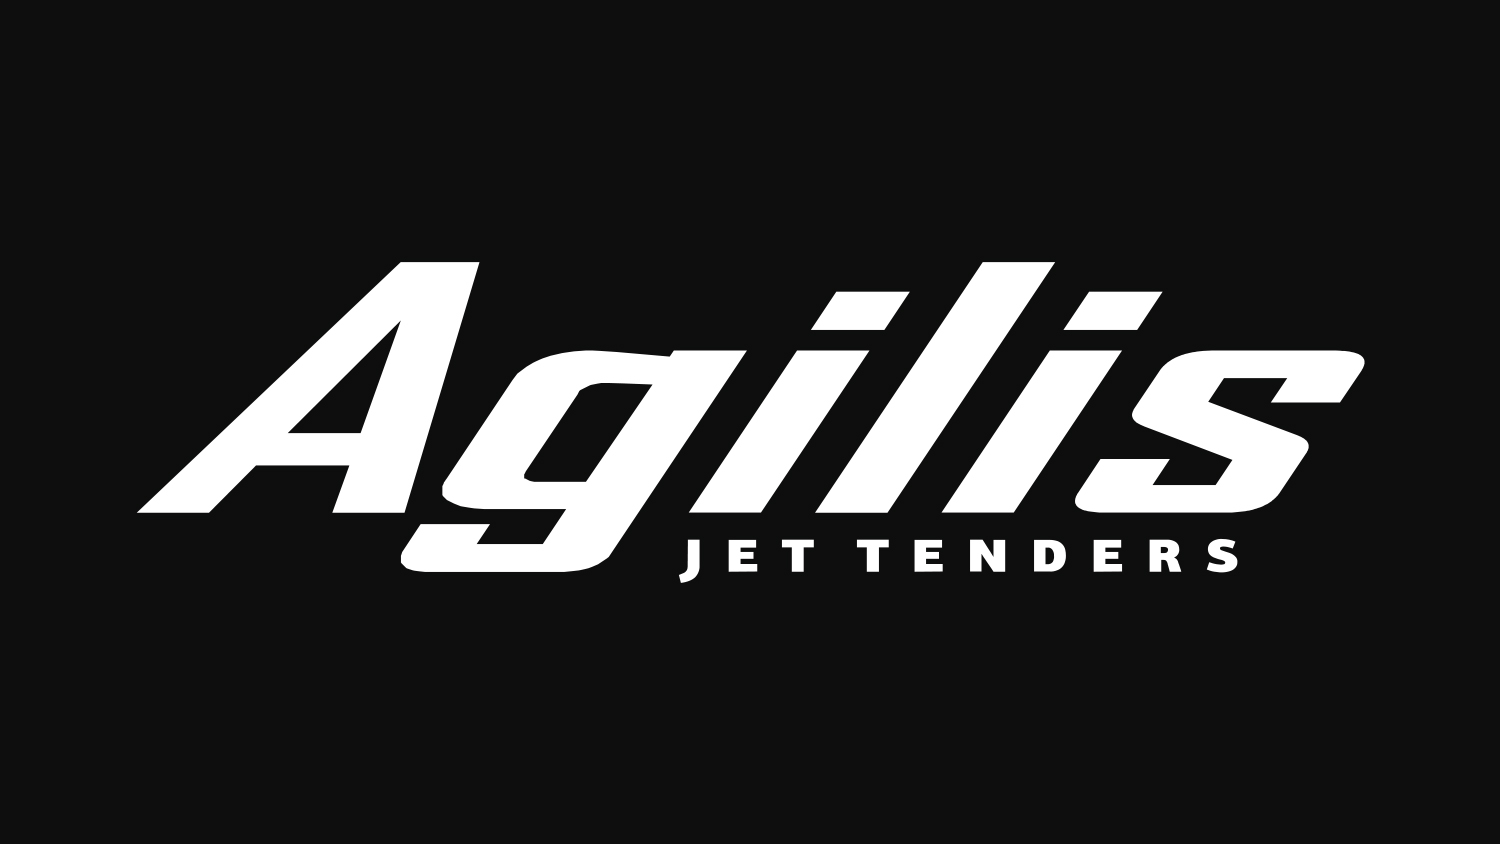 Agilis jet tenders  історія виробника реактивних тендерів